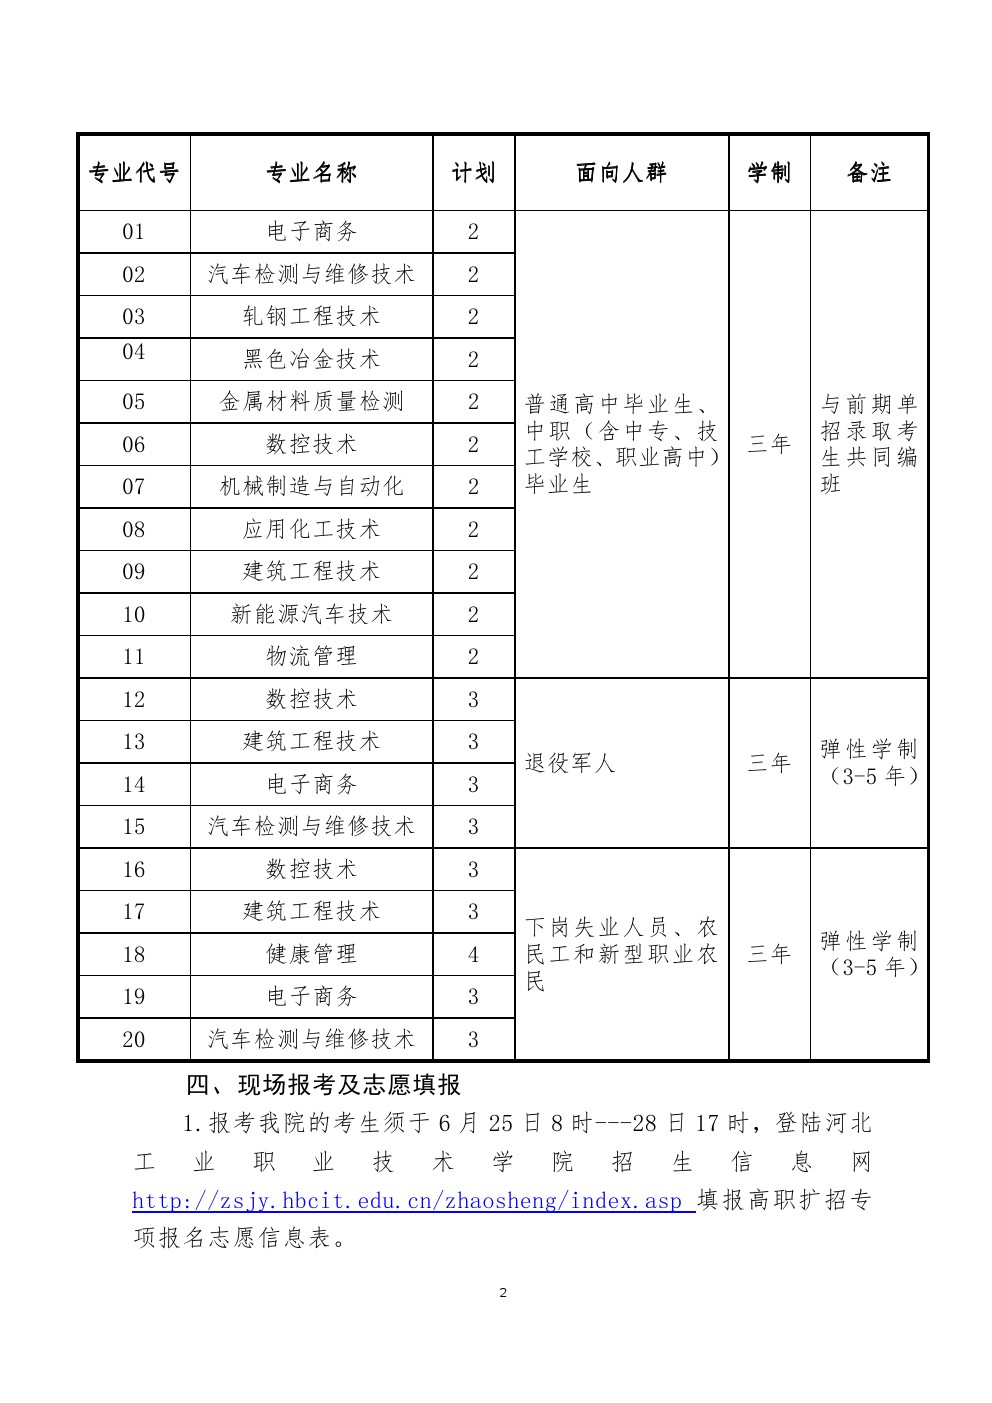 河北工业职业技术学院2019年高职扩招专项考试招生简章 图2